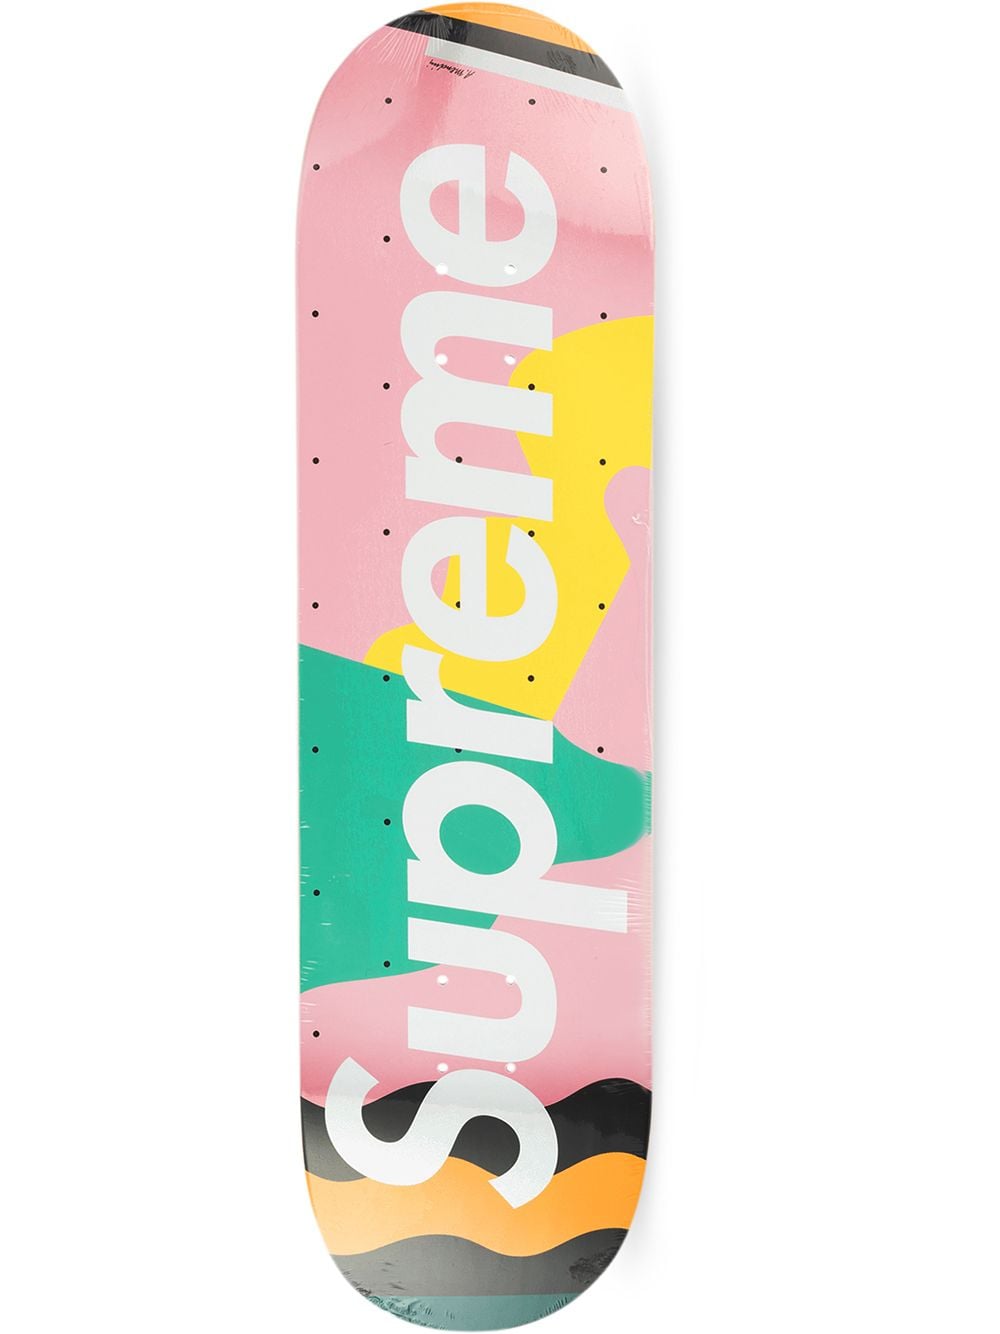 Supreme Mendini graphic-print Skateboard - Farfetch